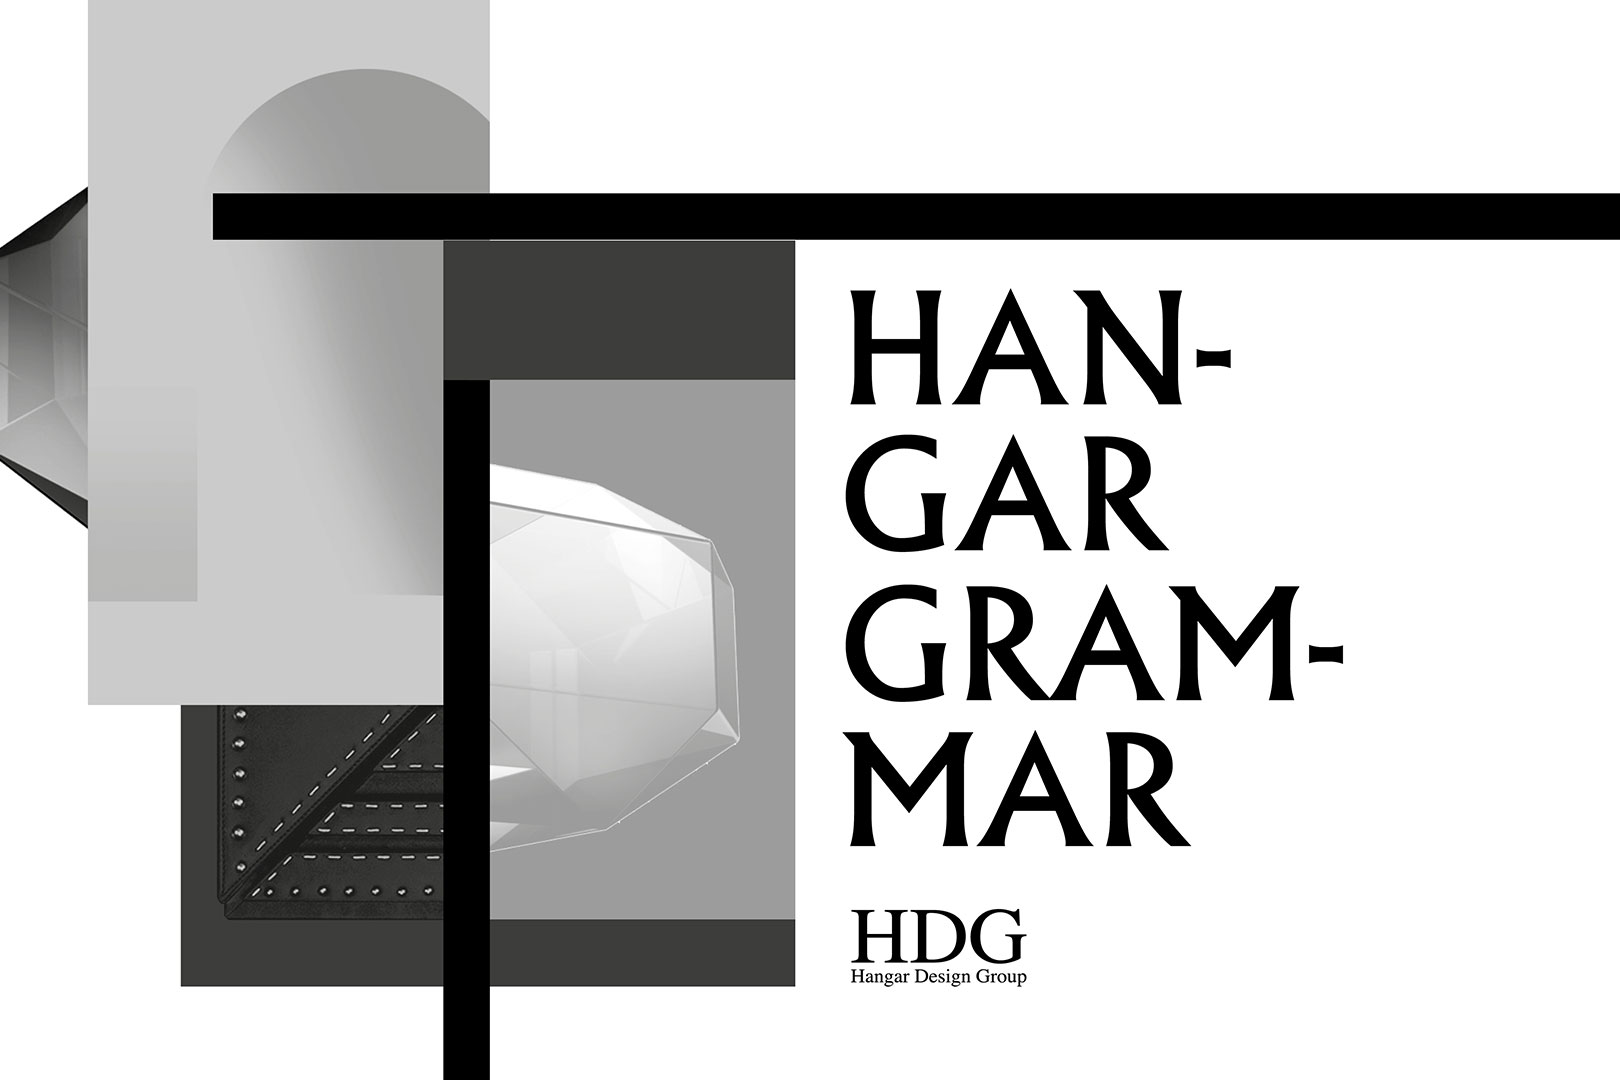 Hangar Grammar: Shaping Matter